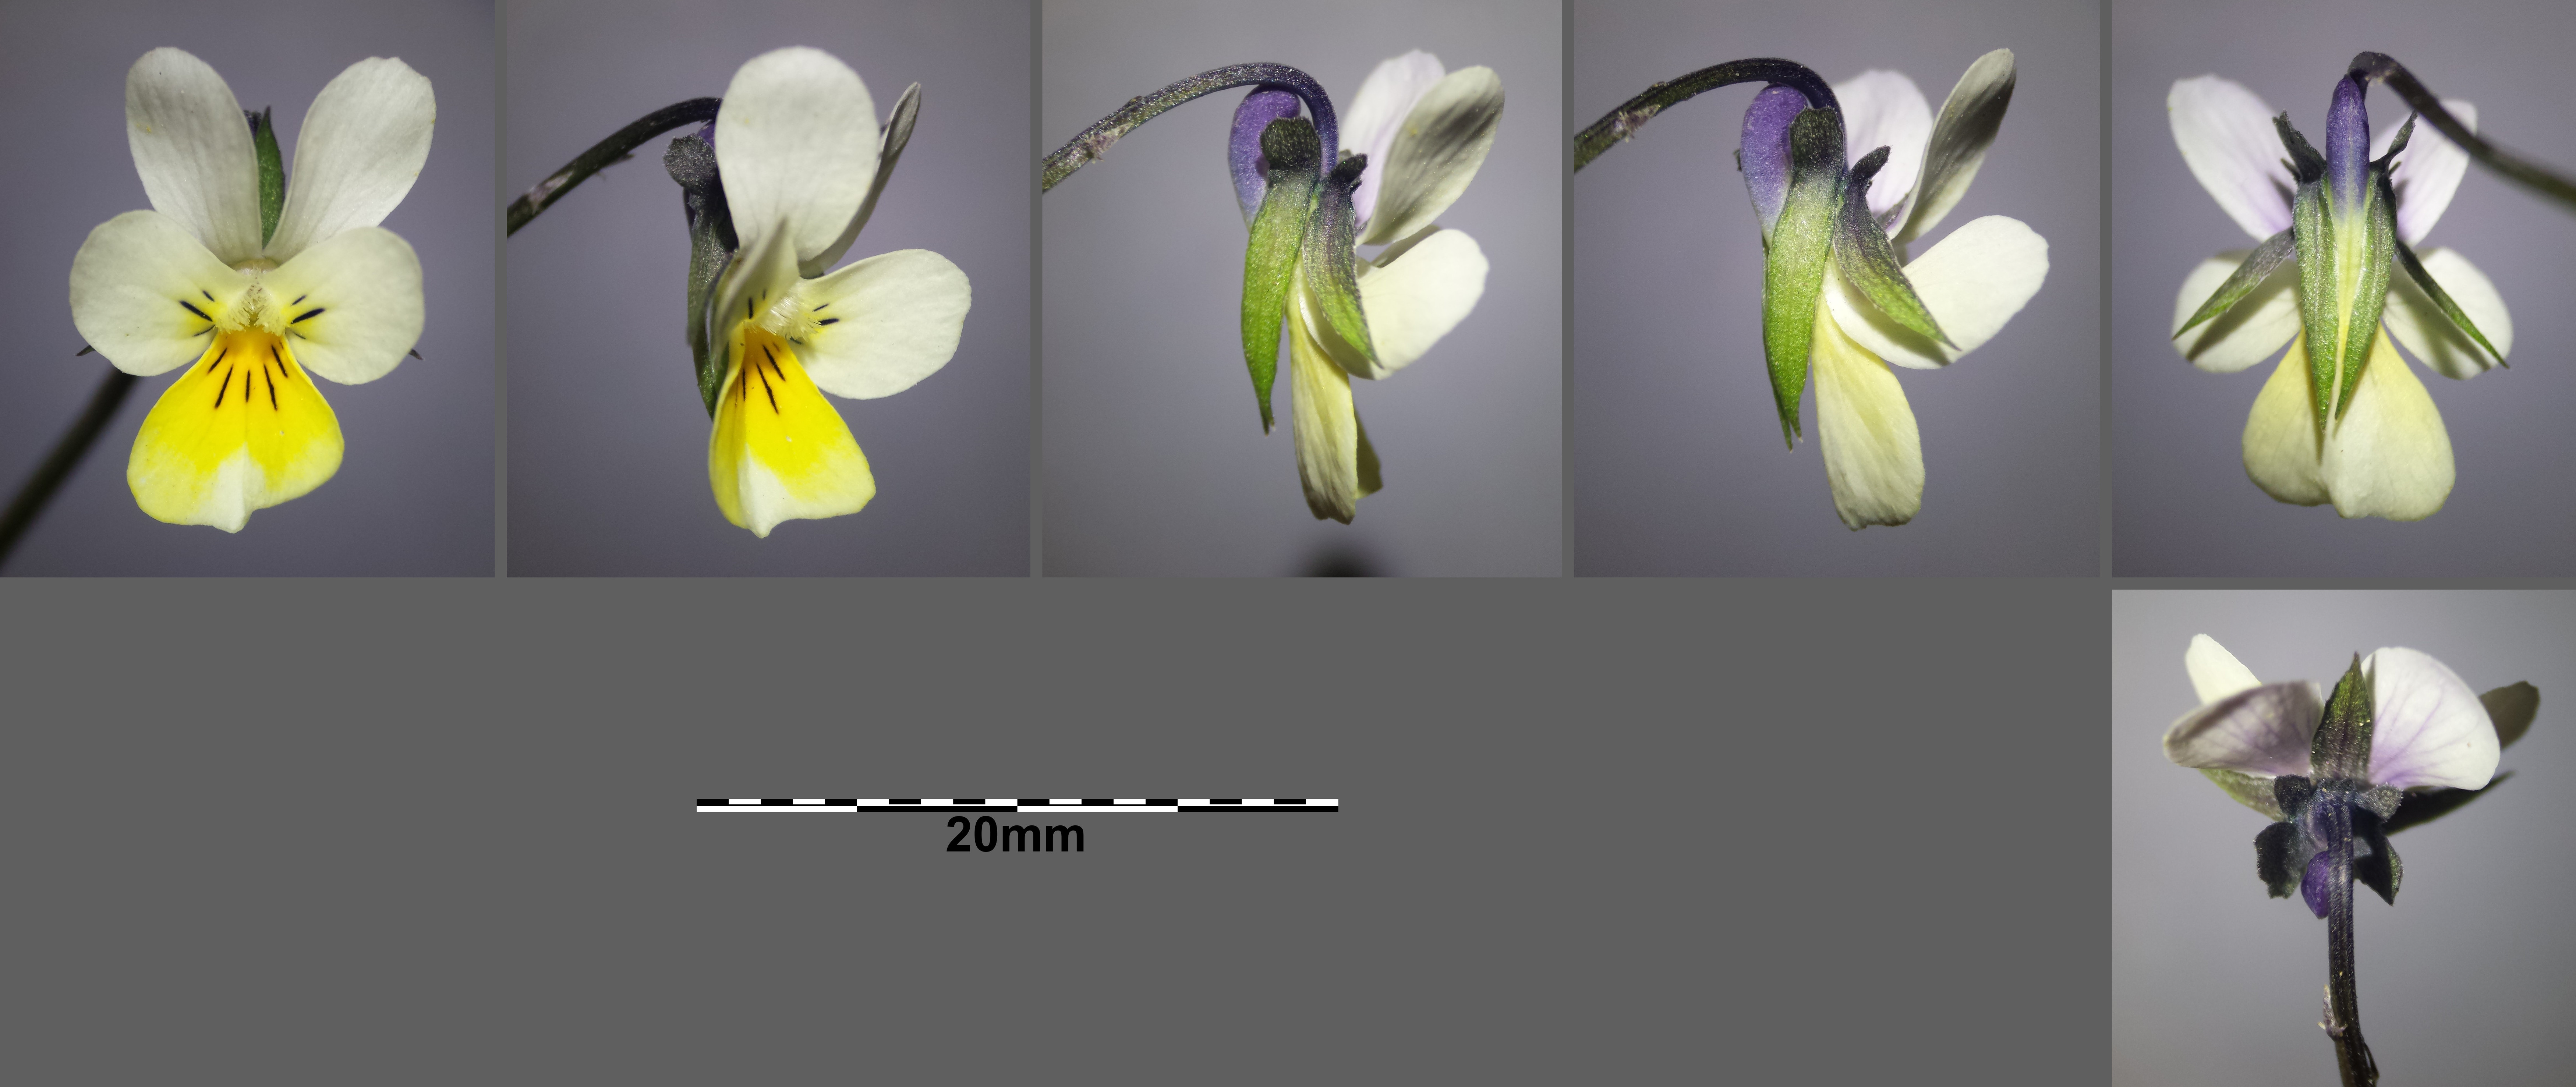 Viola arvensis subsp. arvensis Mikro11.jpg